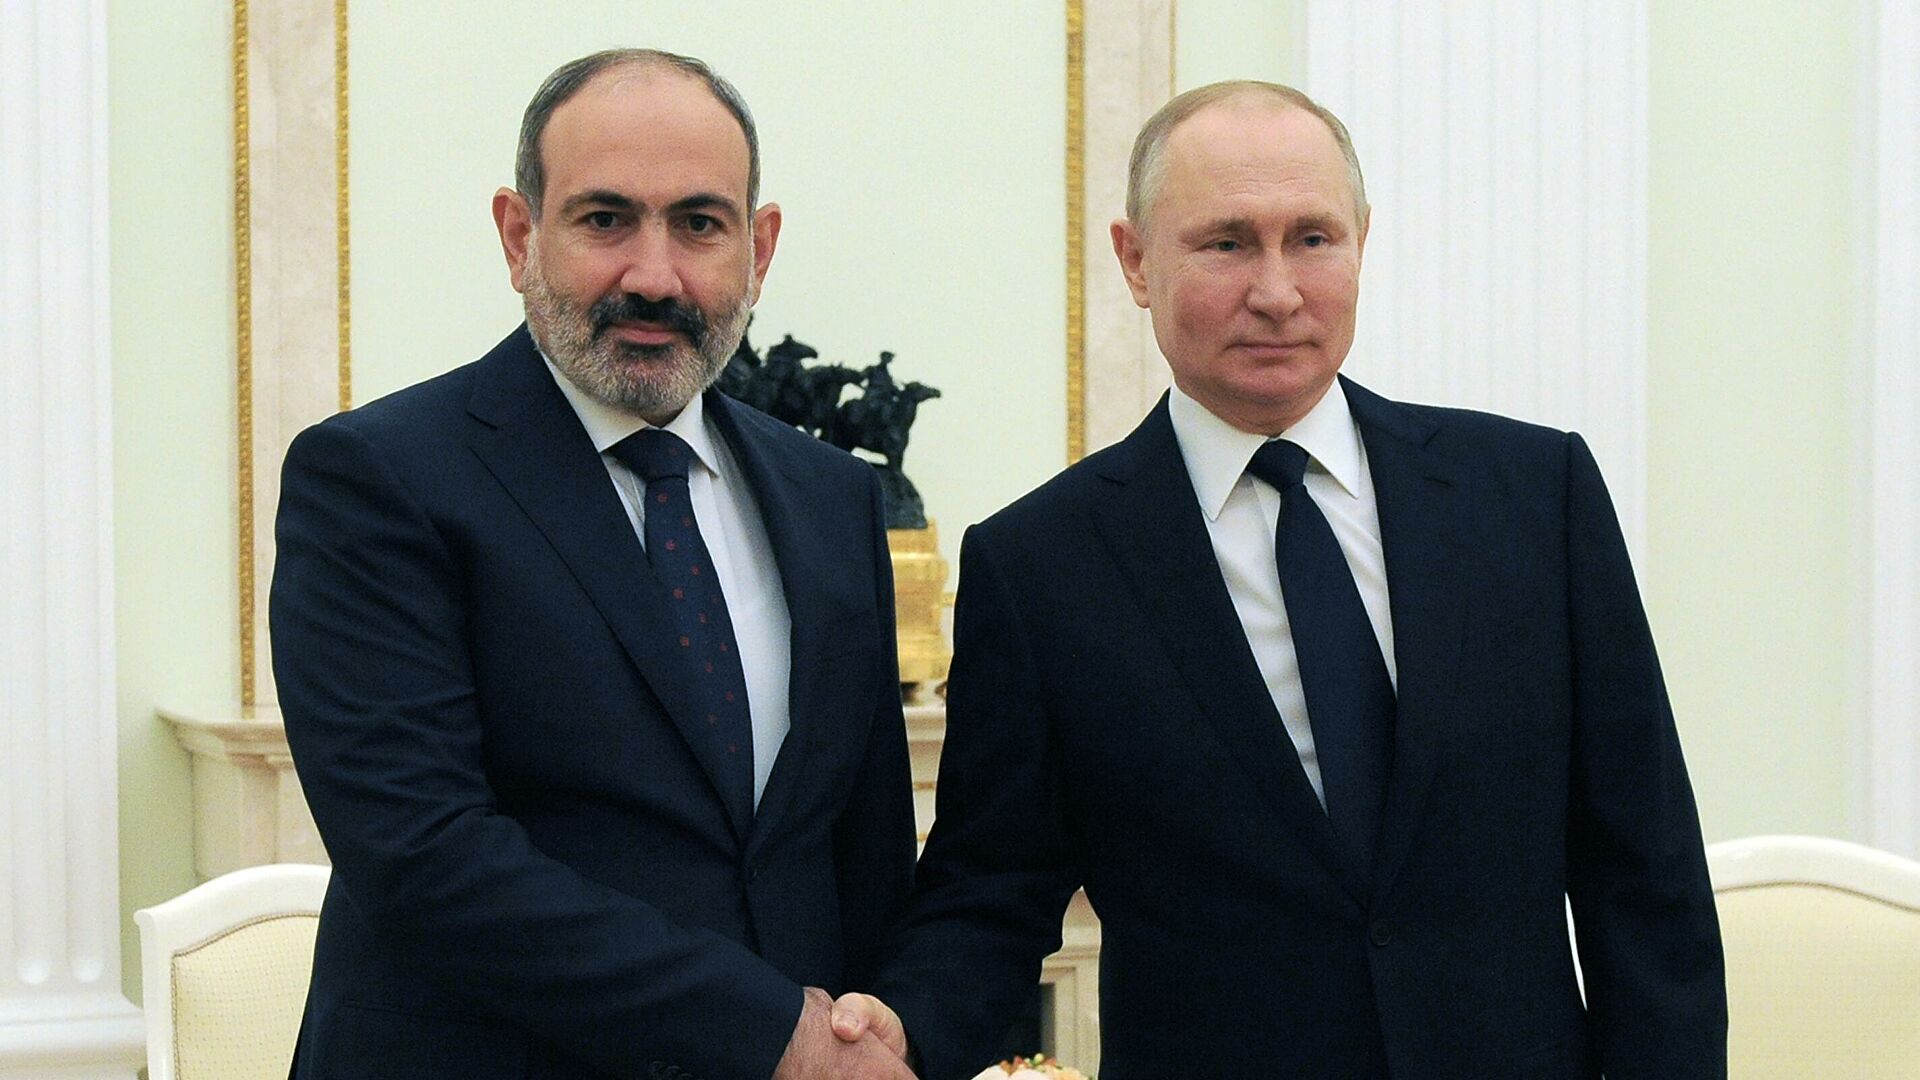 Песков: Путин и Пашинян обсудят сегодня Карабах, размещение российских военных, подписания документов не планируется